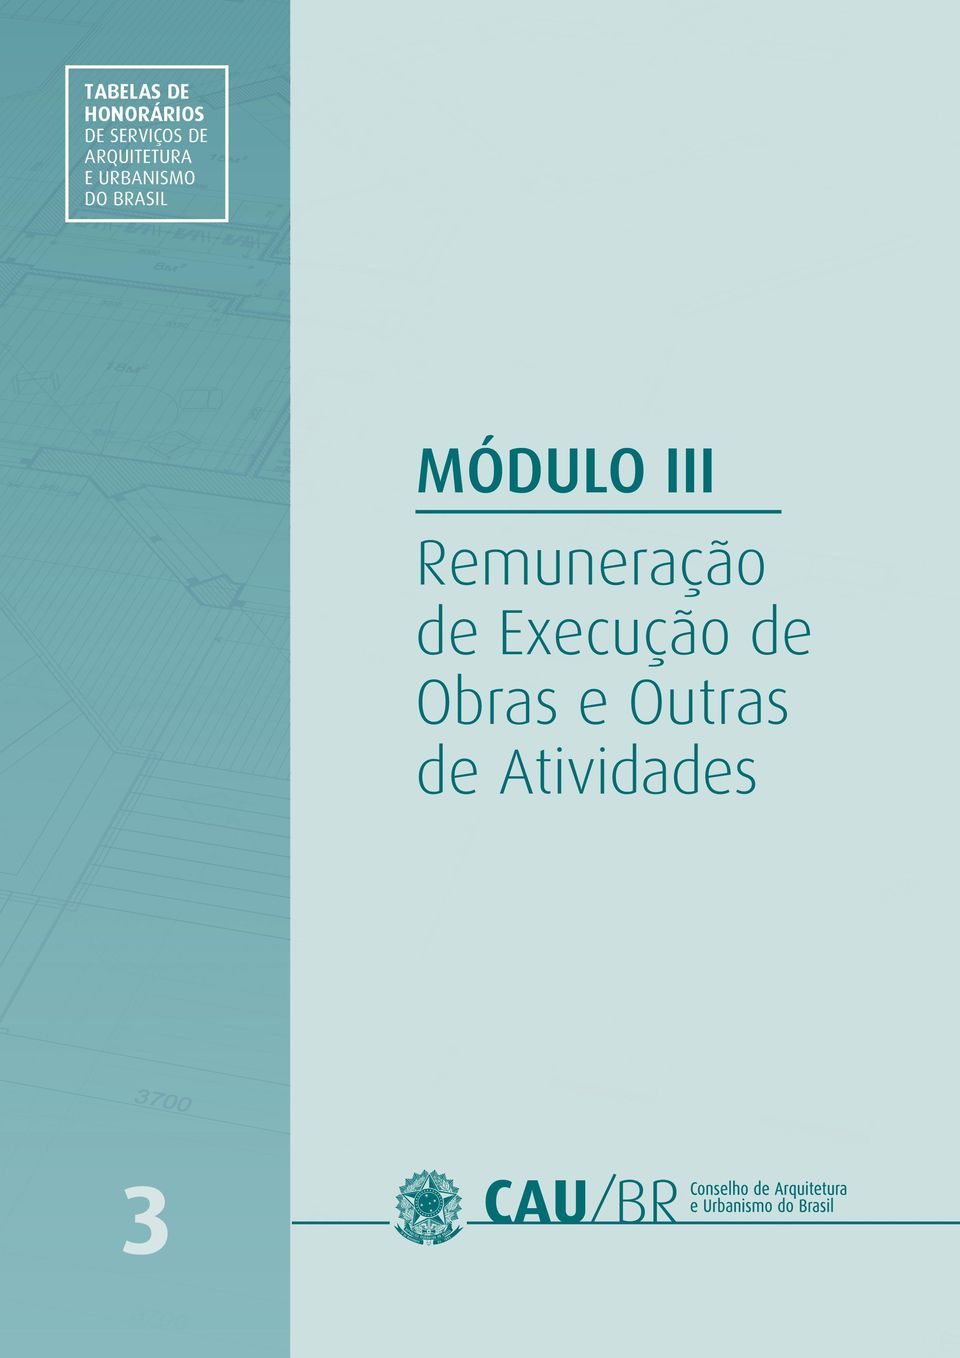 BRASIL MÓDULO III Remuneração de